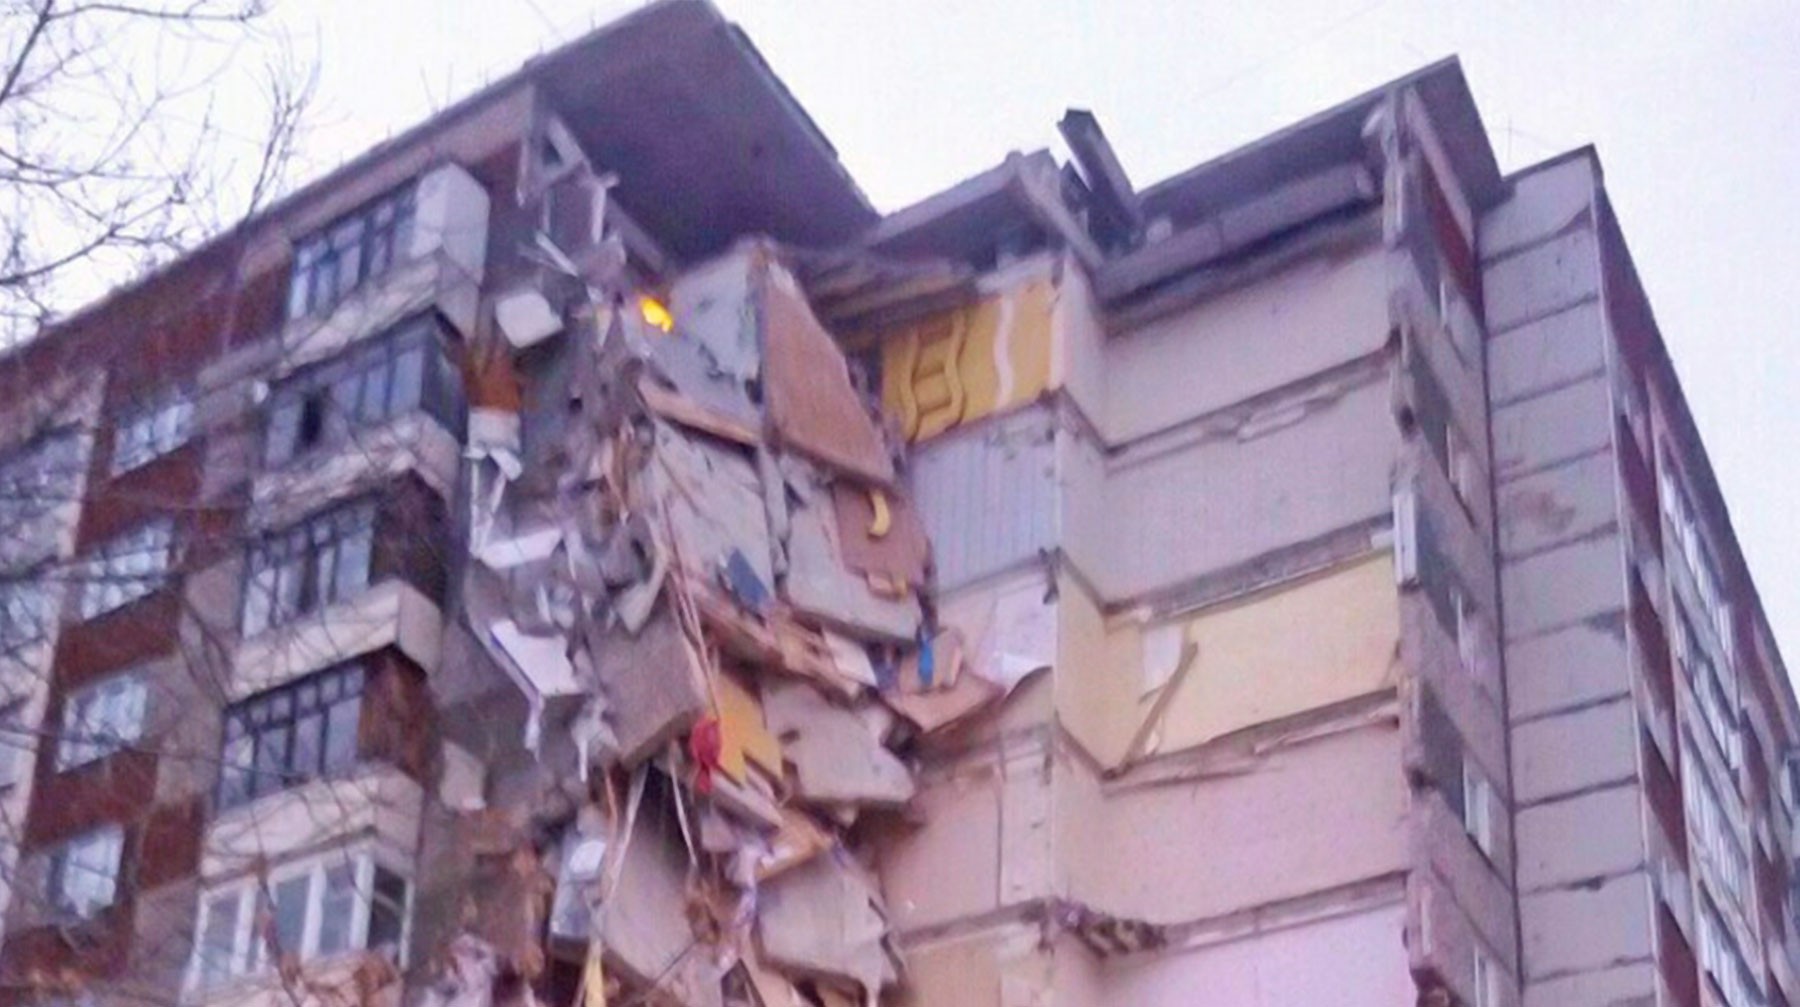 Dailystorm - Жителя Ижевска, взорвавшего жилой дом, направили на принудительное лечение